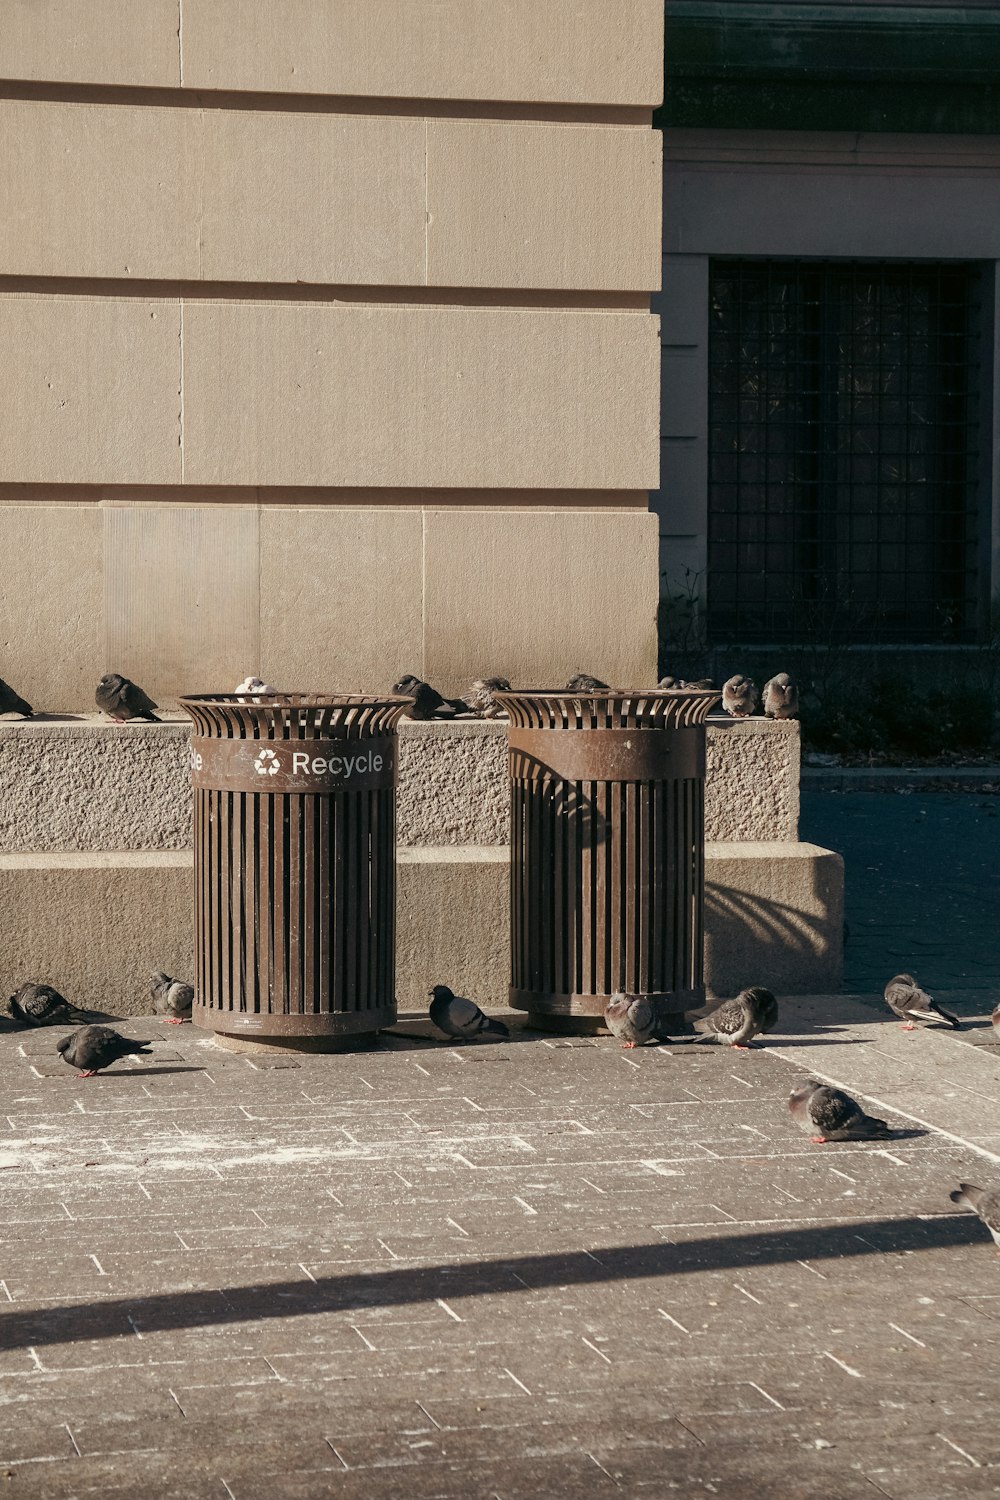 Un groupe d’oiseaux assis au-dessus de poubelles